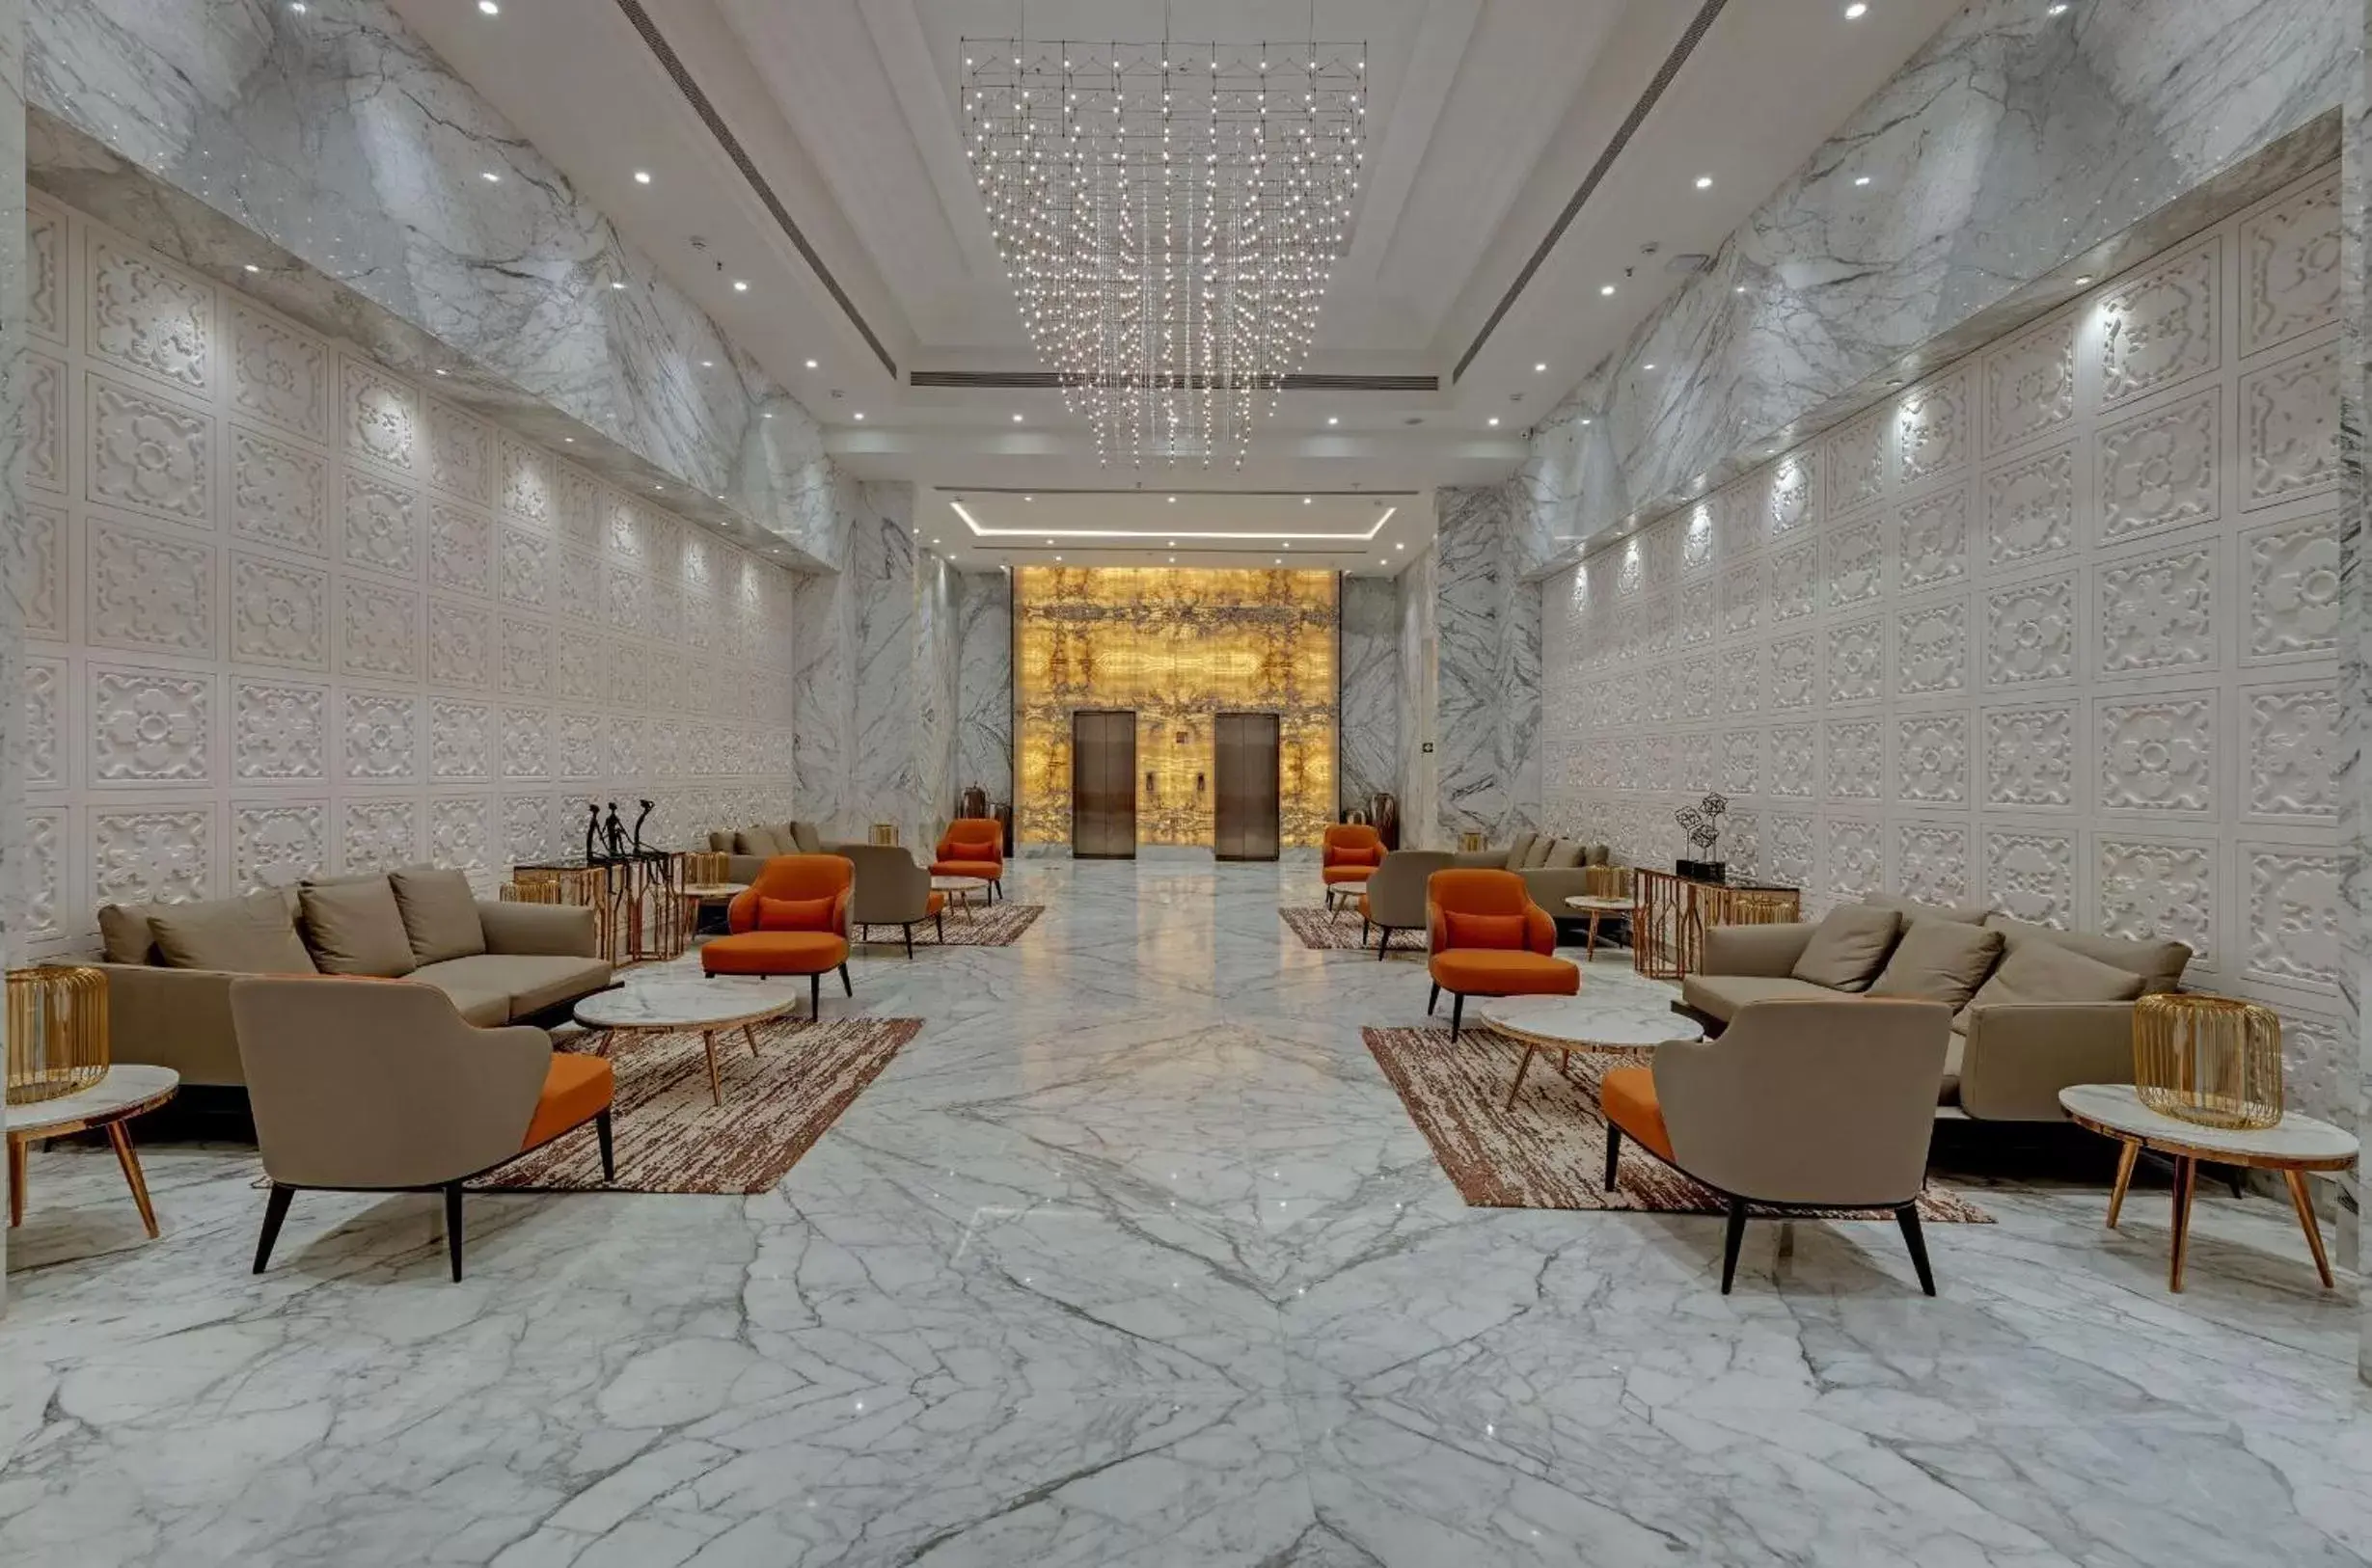 Lobby or reception in The Fern Leo Resort & Club - Junagadh, Gujarat